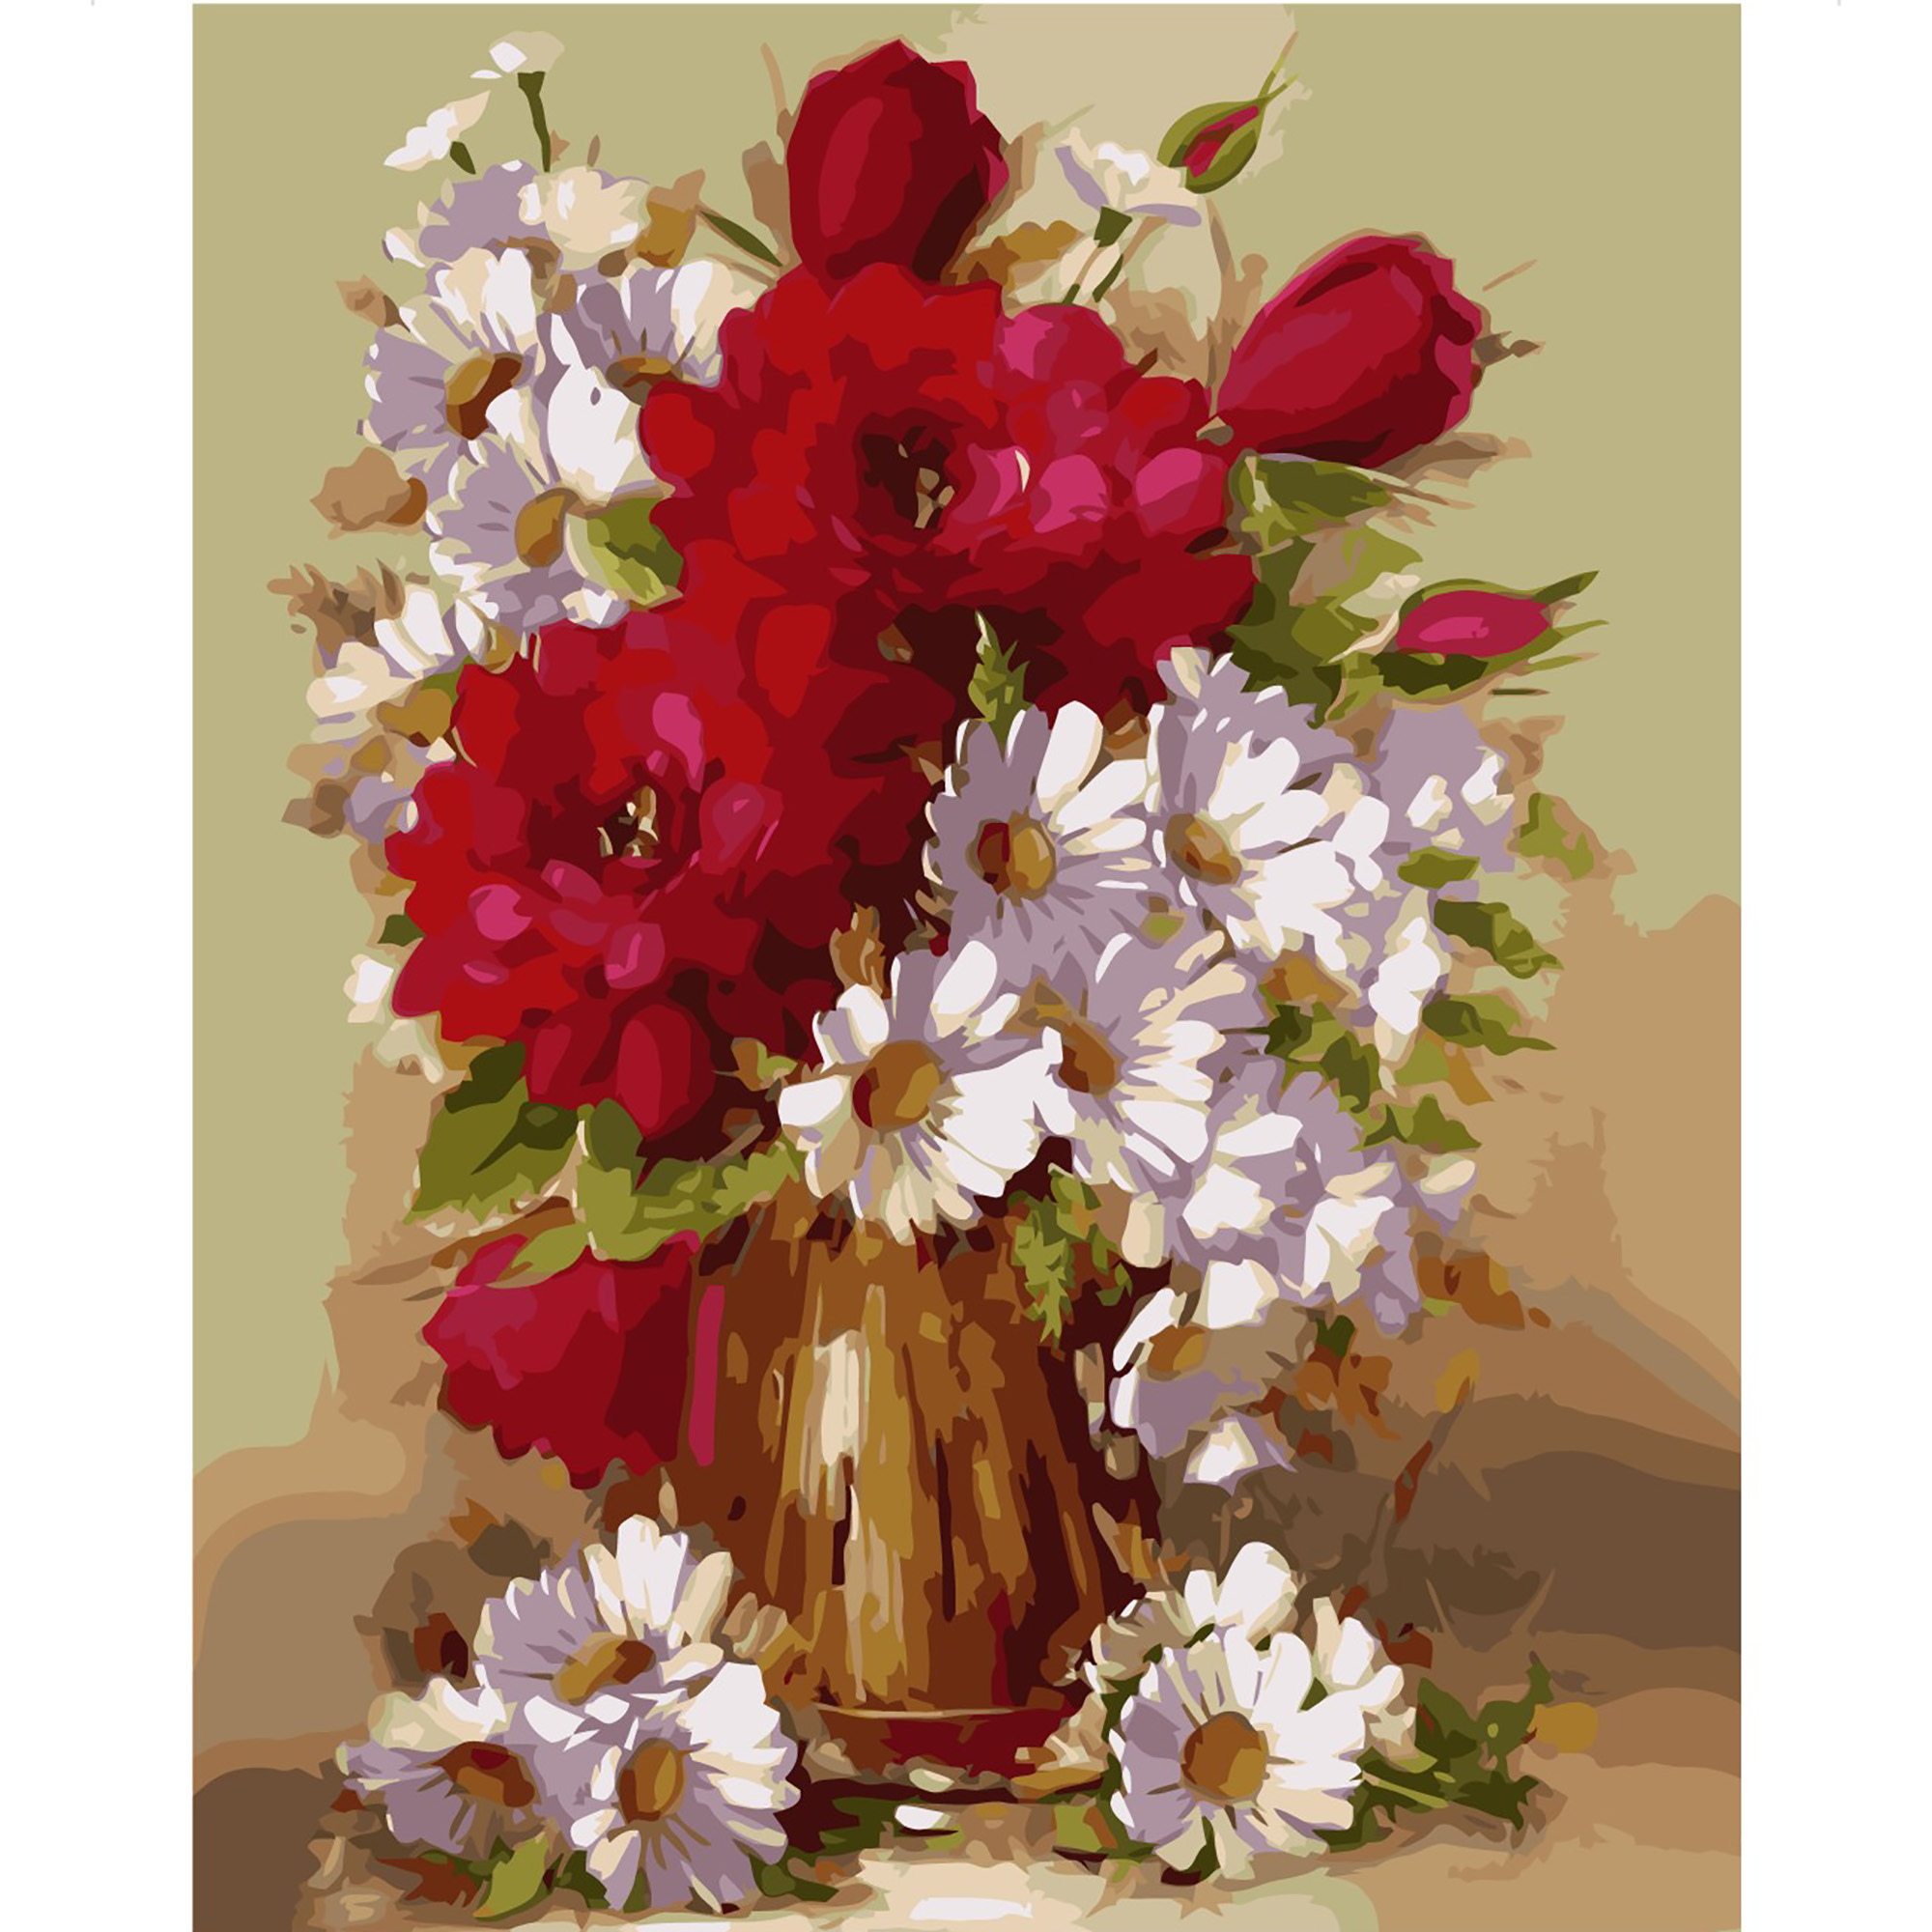 Malen nach Zahlen Strateg PREMIUM Rot-weißer Blumenstrauß mit Lack im Format 40x50 cm VA-2010